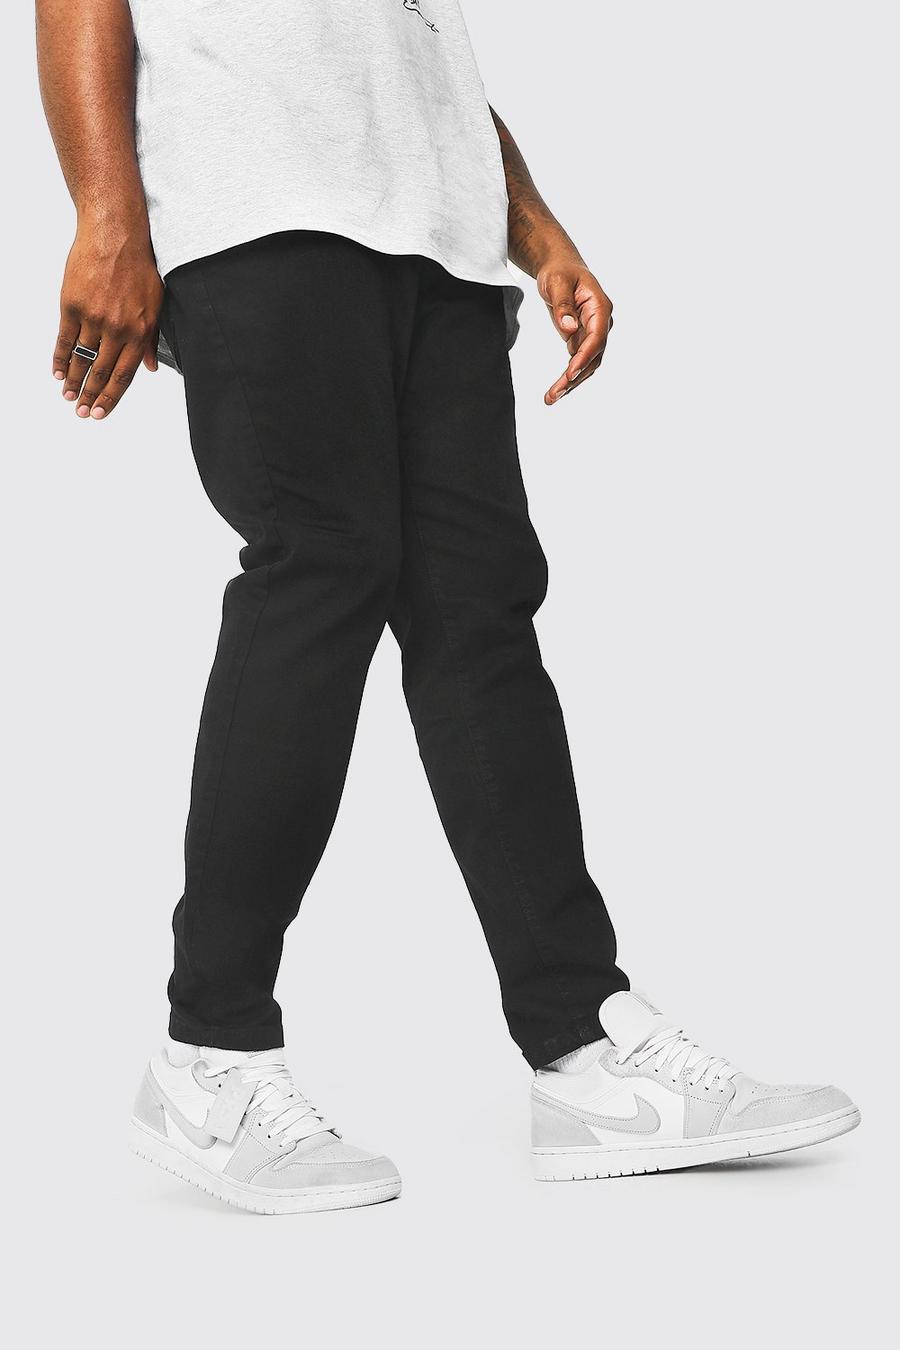 שחור מכנסי ג'ינס בגזרת סקיני לגברים גדולים וגבוהים image number 1